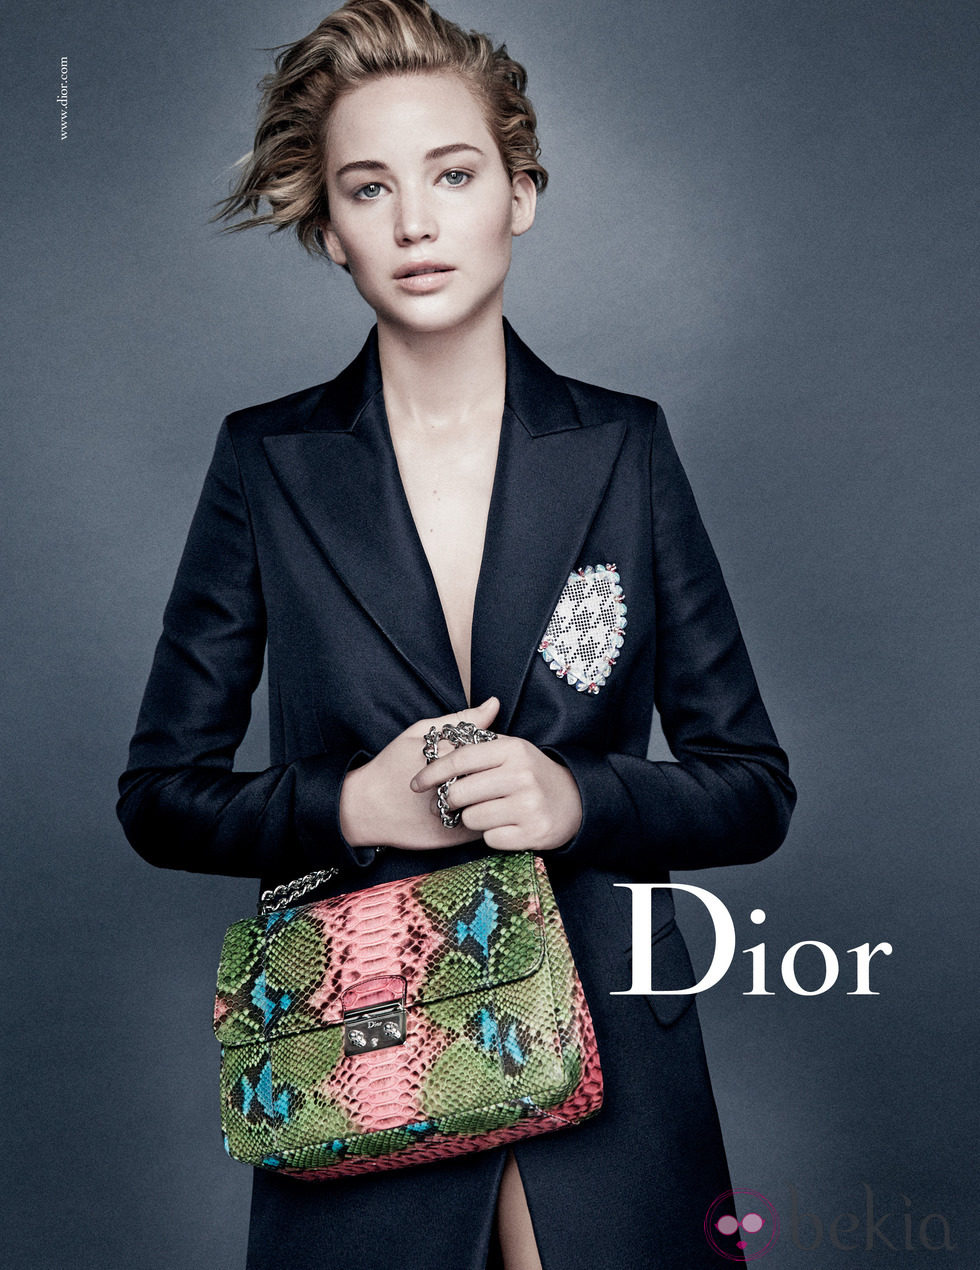 Jennifer Lawrence posa en la nueva campaña 2014 con el bolso 'Miss Dior' de Dior